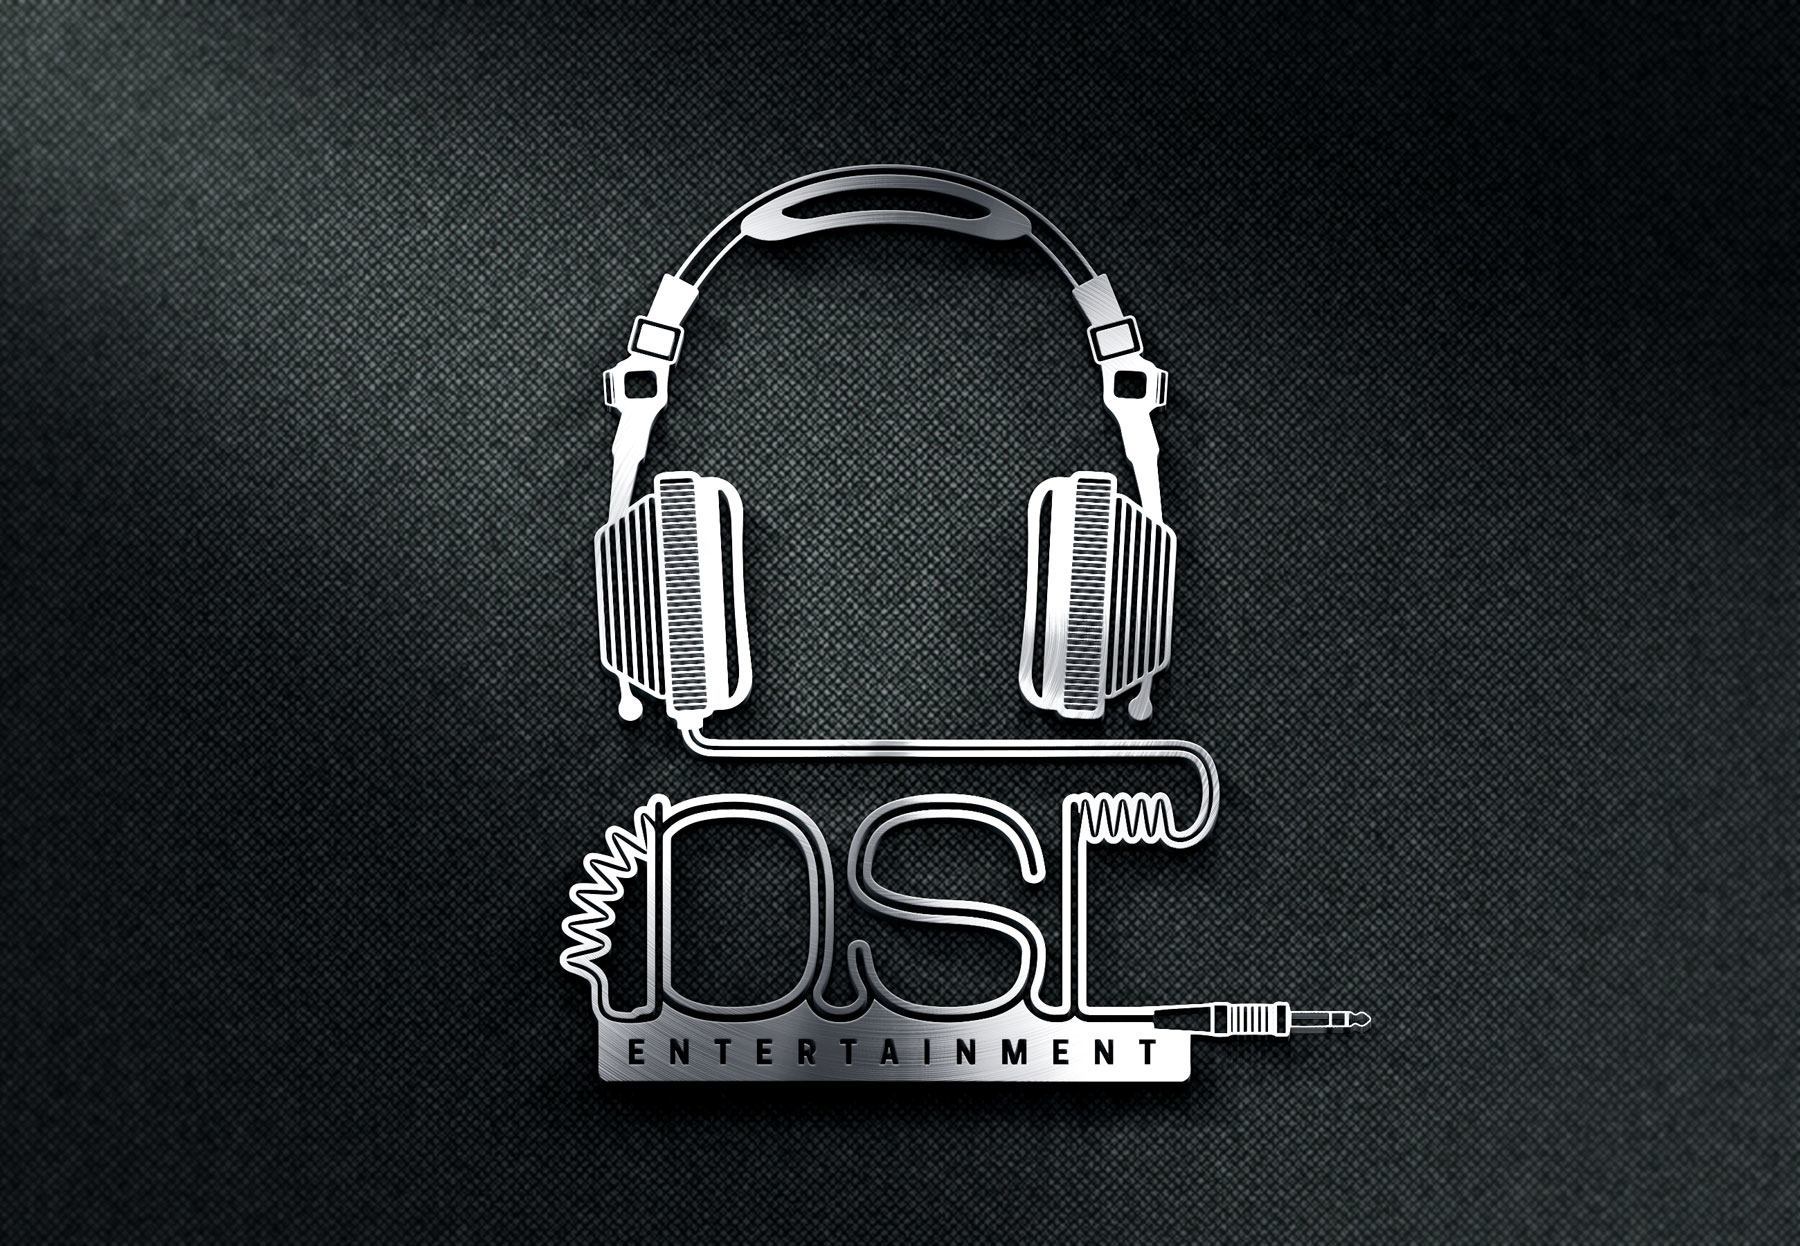 DSL Logo - DSL Entertainment Logo - Double Shot Design